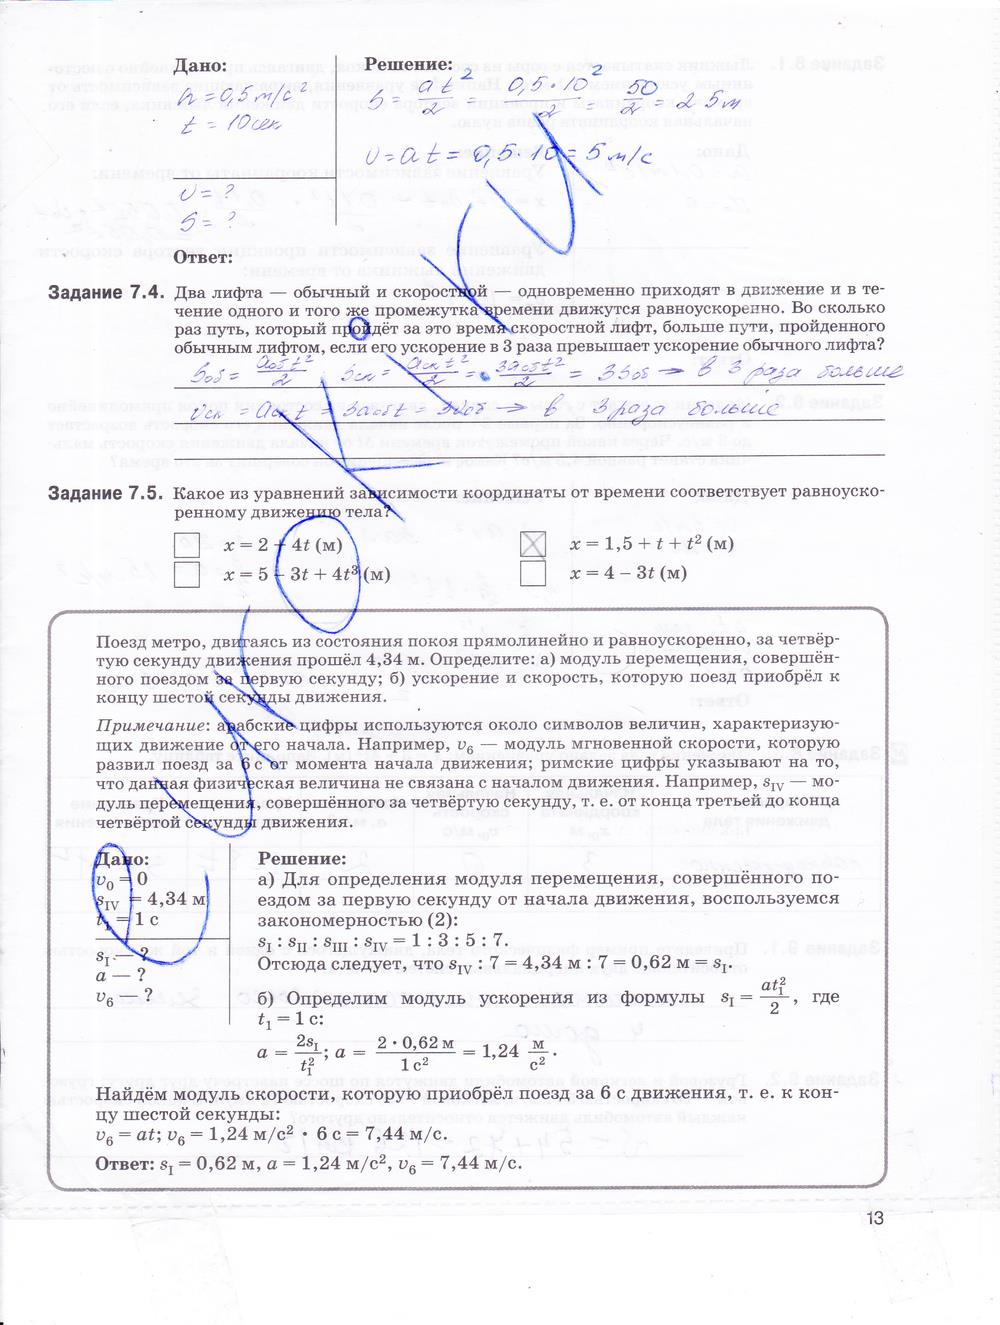 гдз 9 класс рабочая тетрадь страница 13 физика Гутник, Власова